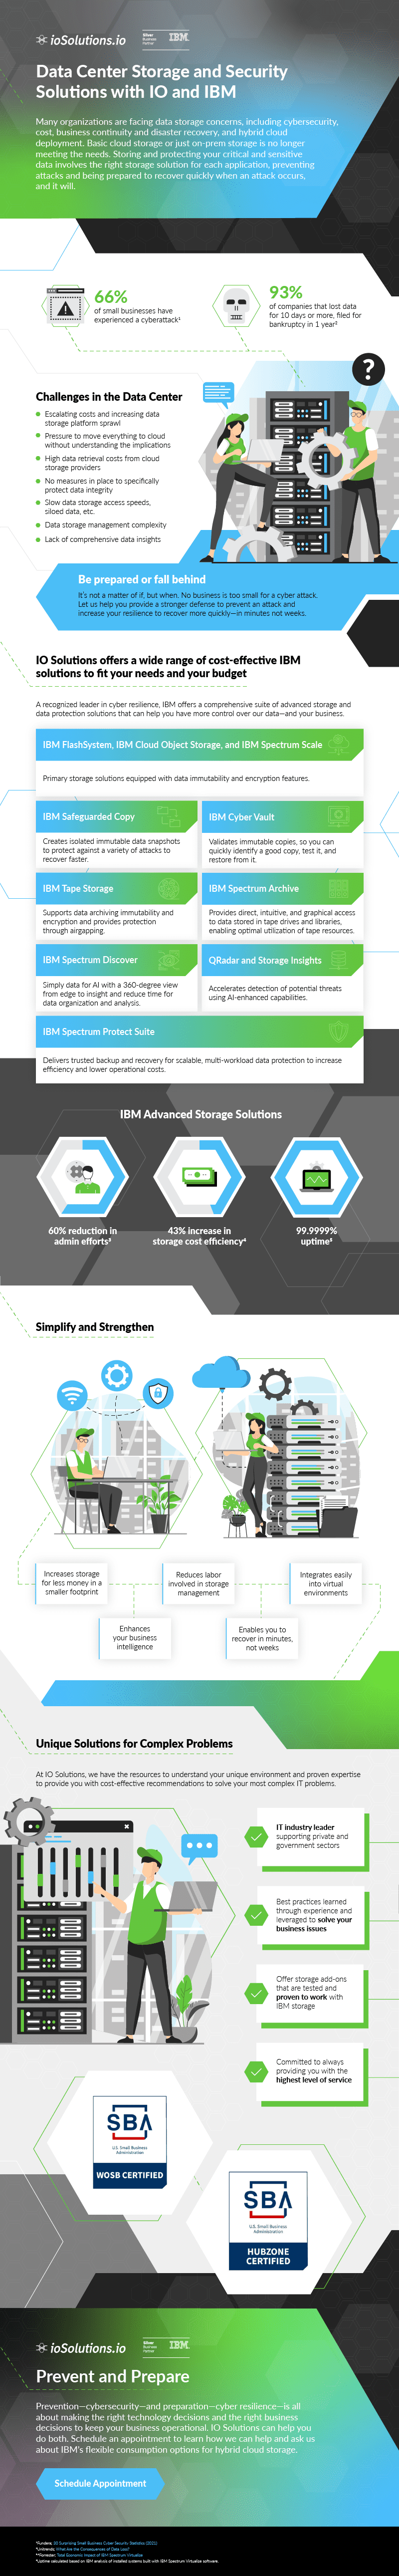 IO Solutions IBM Infographic